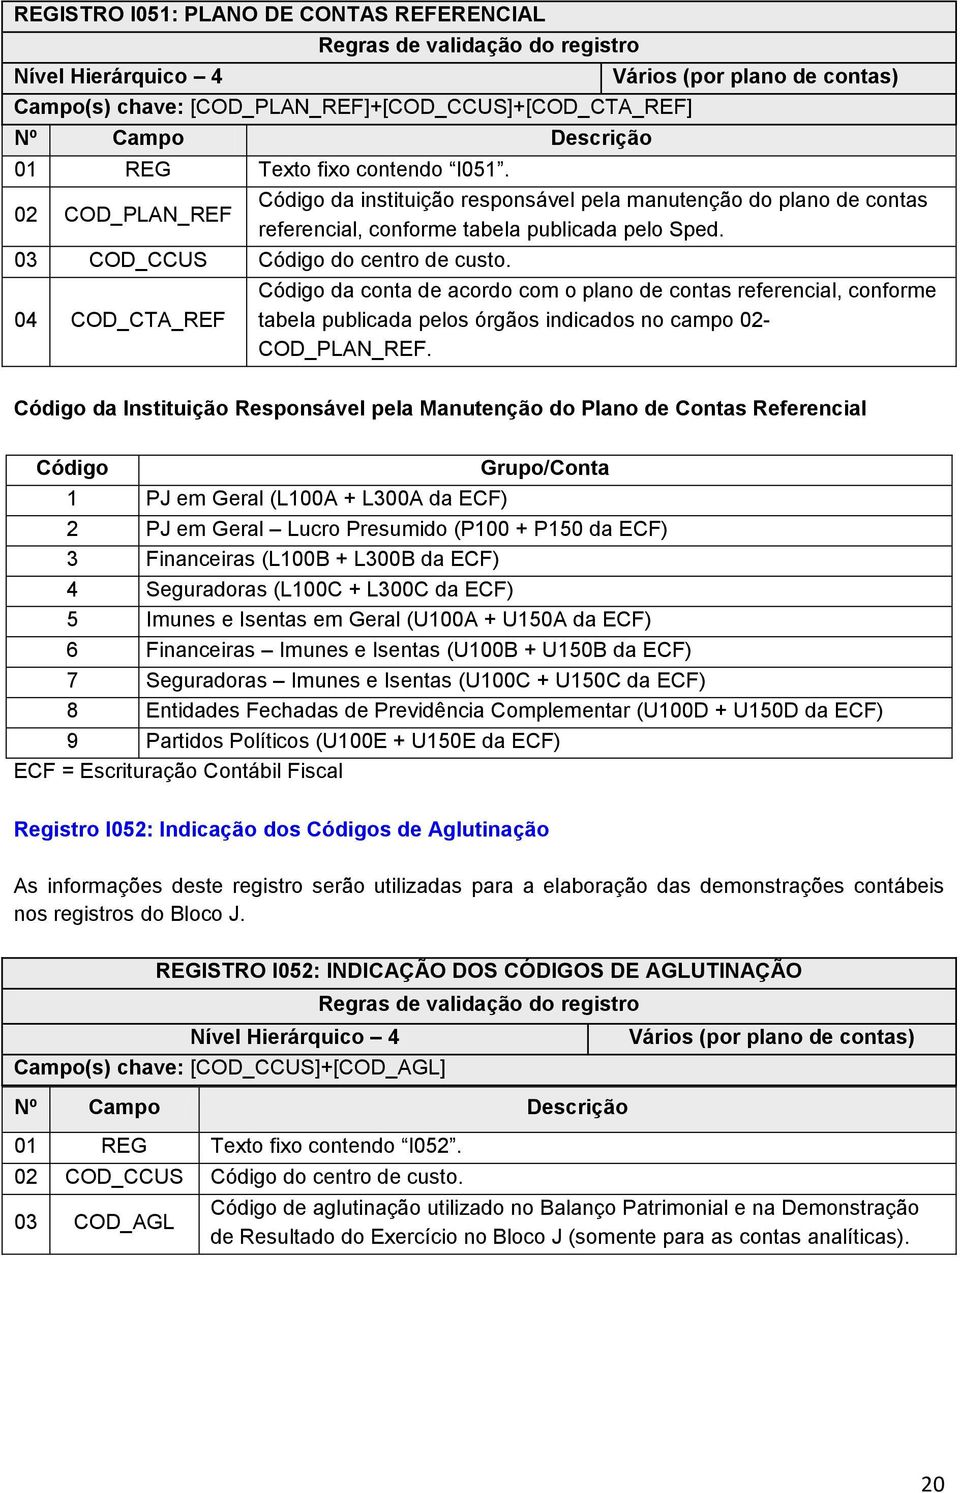 04 COD_CTA_REF Código da conta de acordo com o plano de contas referencial, conforme tabela publicada pelos órgãos indicados no campo 02- COD_PLAN_REF.